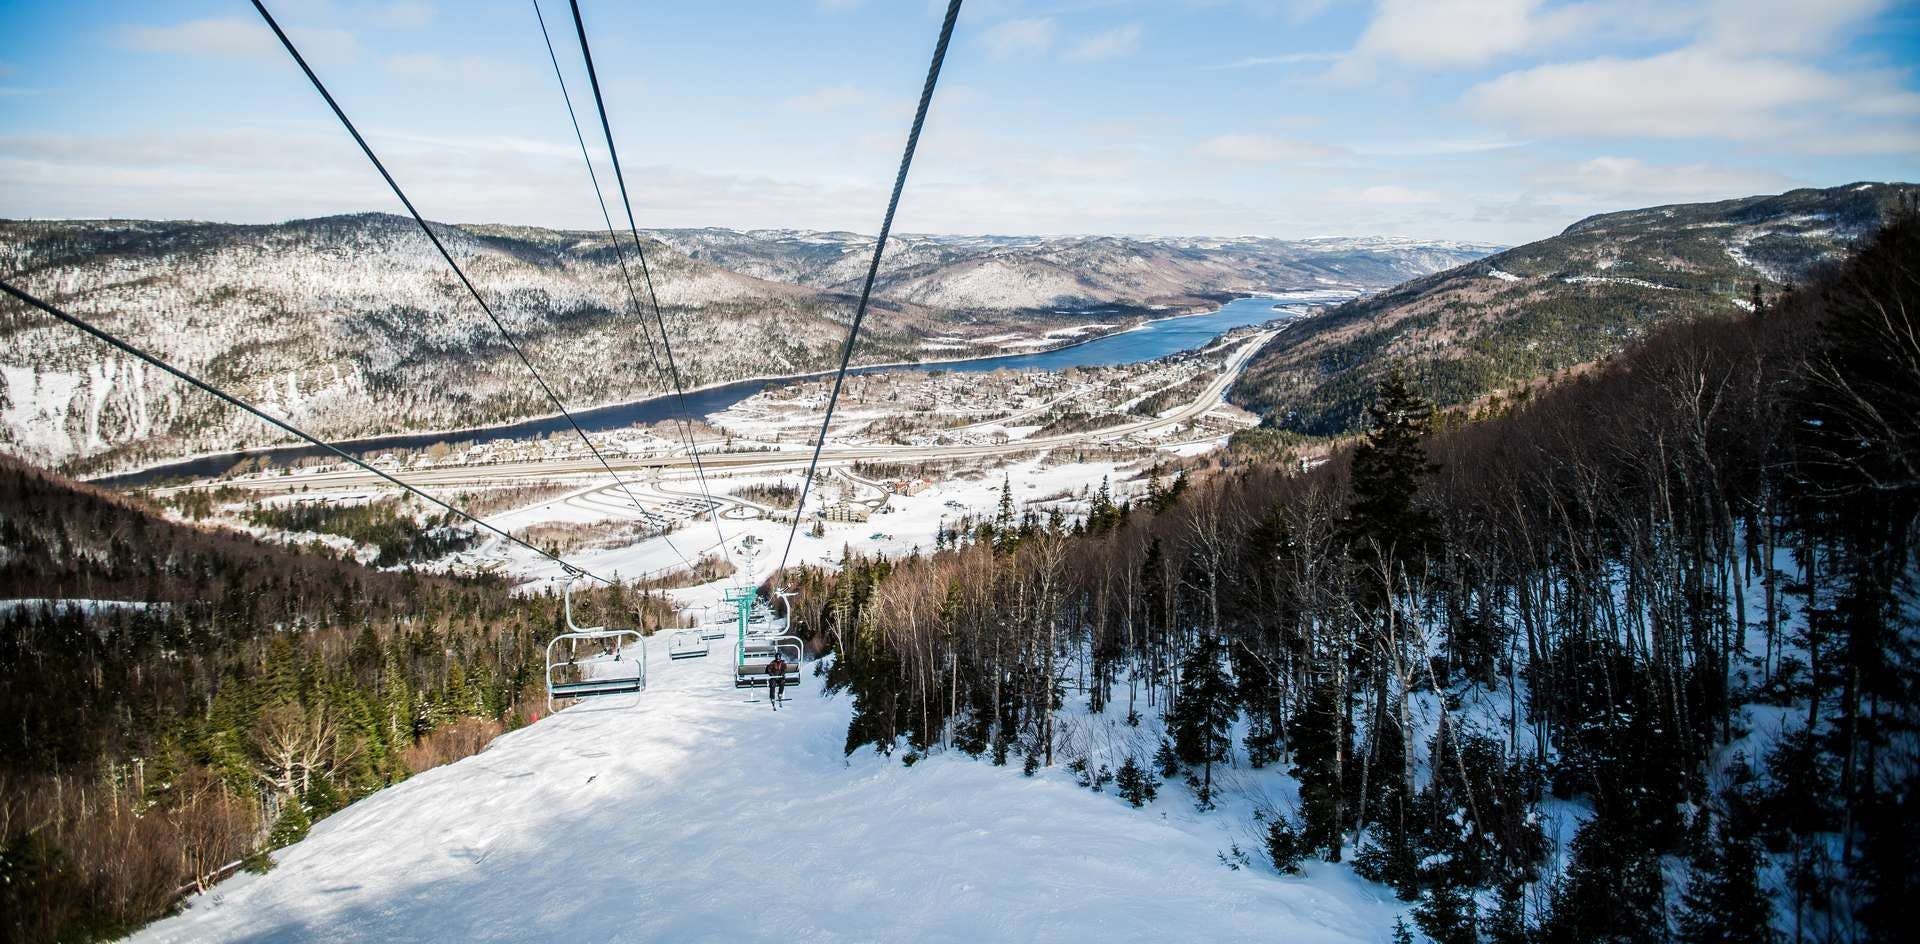 Marble Ski Resort best ski resort in Canada, Ratepunk